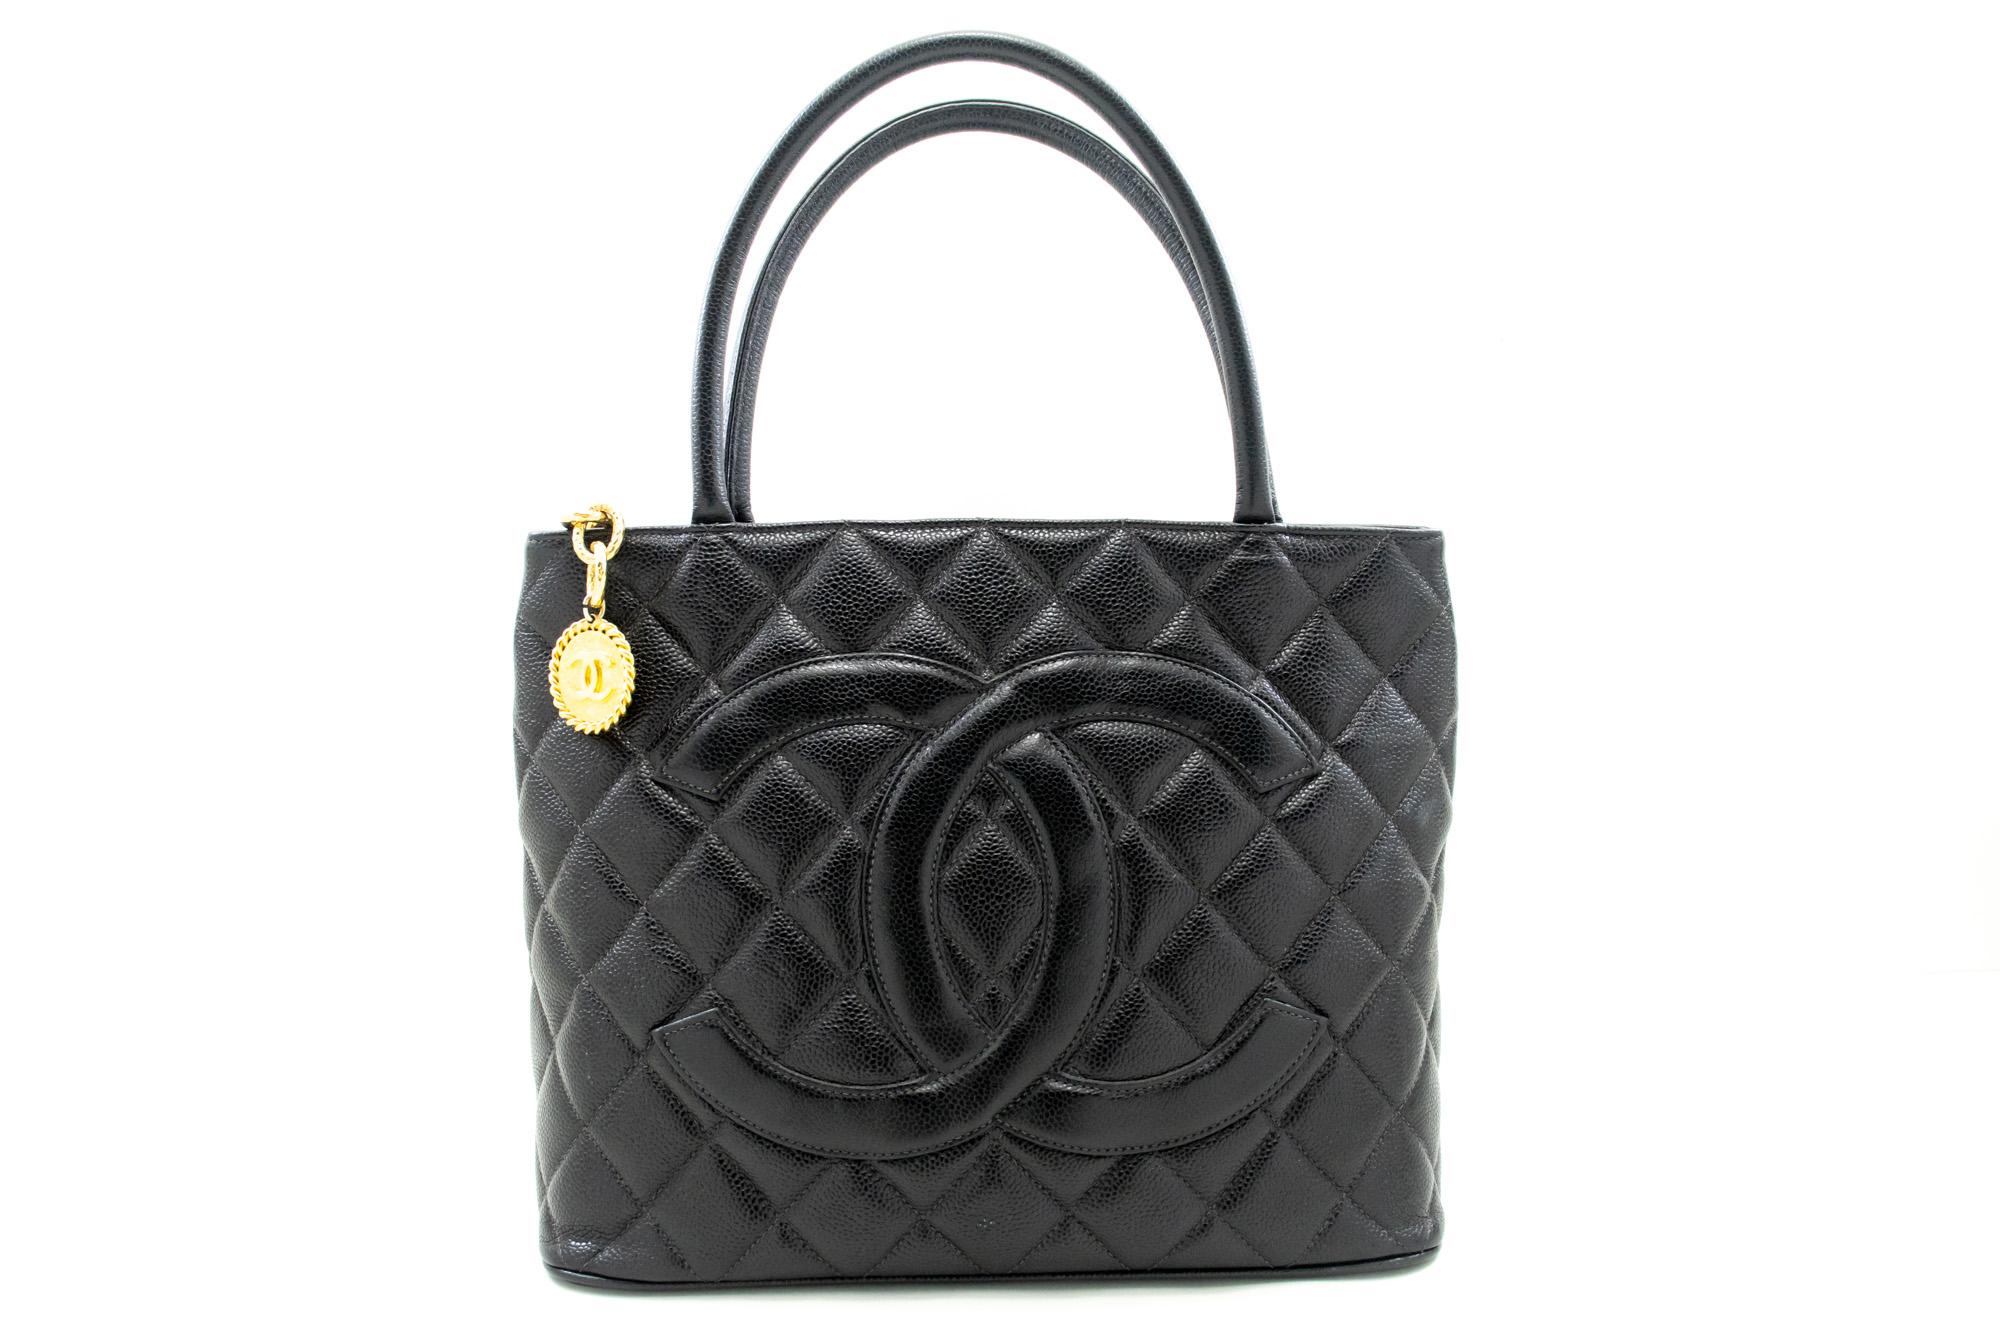 Un authentique Chanel Gold Medallion Caviar Shoulder Bag Grand Shopping Tote. La couleur est noire. Le matériau extérieur est le cuir. Le motif est solide. Cet article est un Vintage / Classique. L'année de fabrication serait 1997-1999.
Conditions